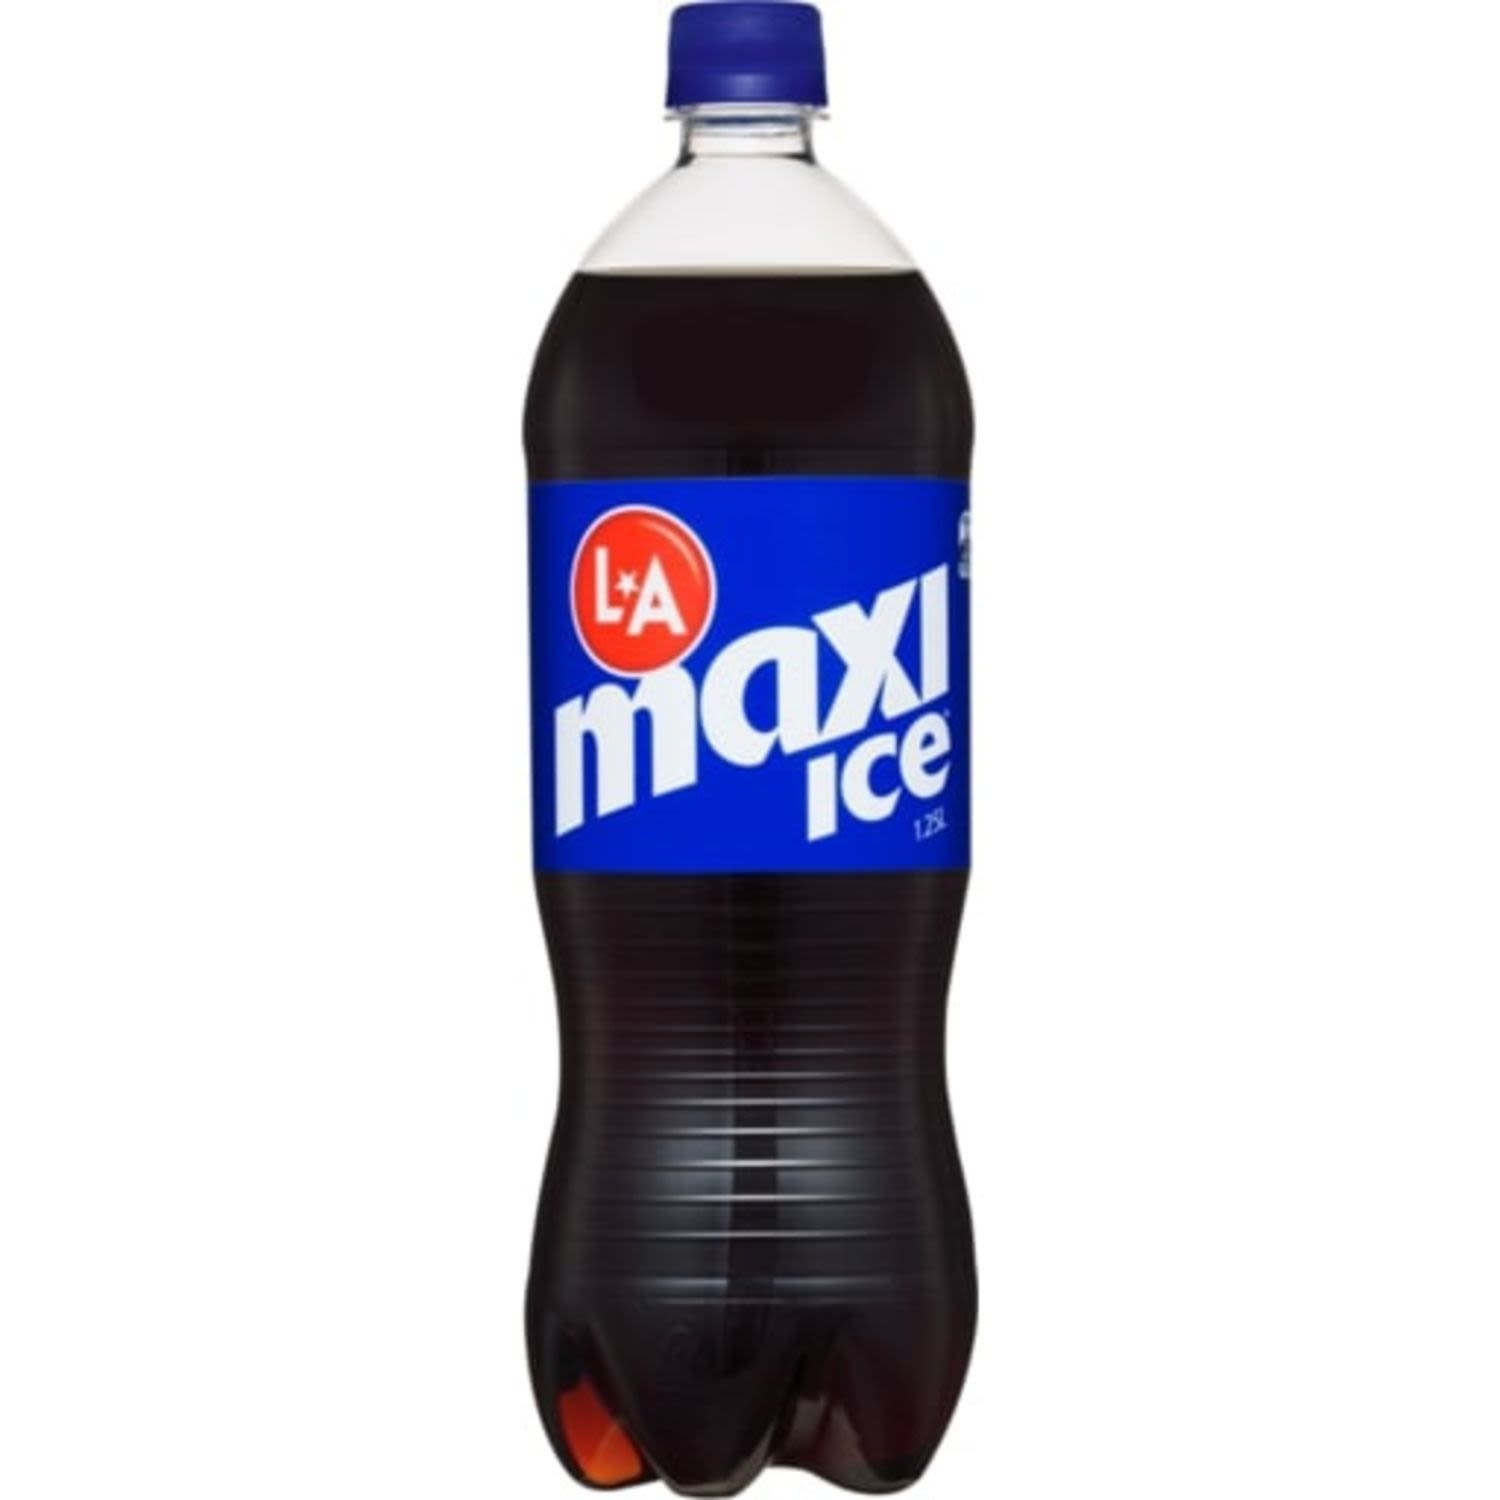 La Ice Maxi Cola Bottle, 1.25 Litre